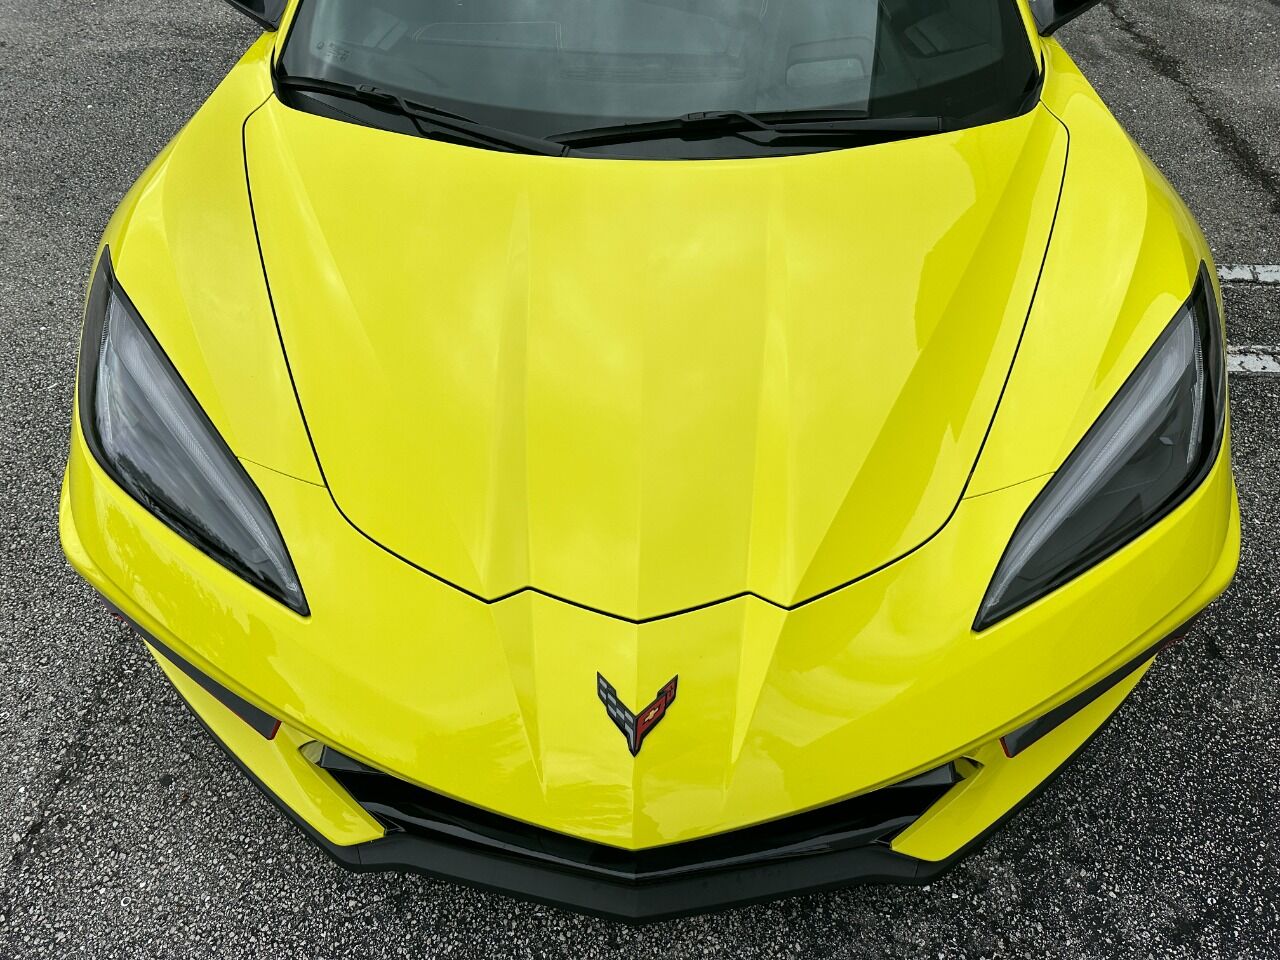 2021 Chevrolet Corvette Coupe - $86,900